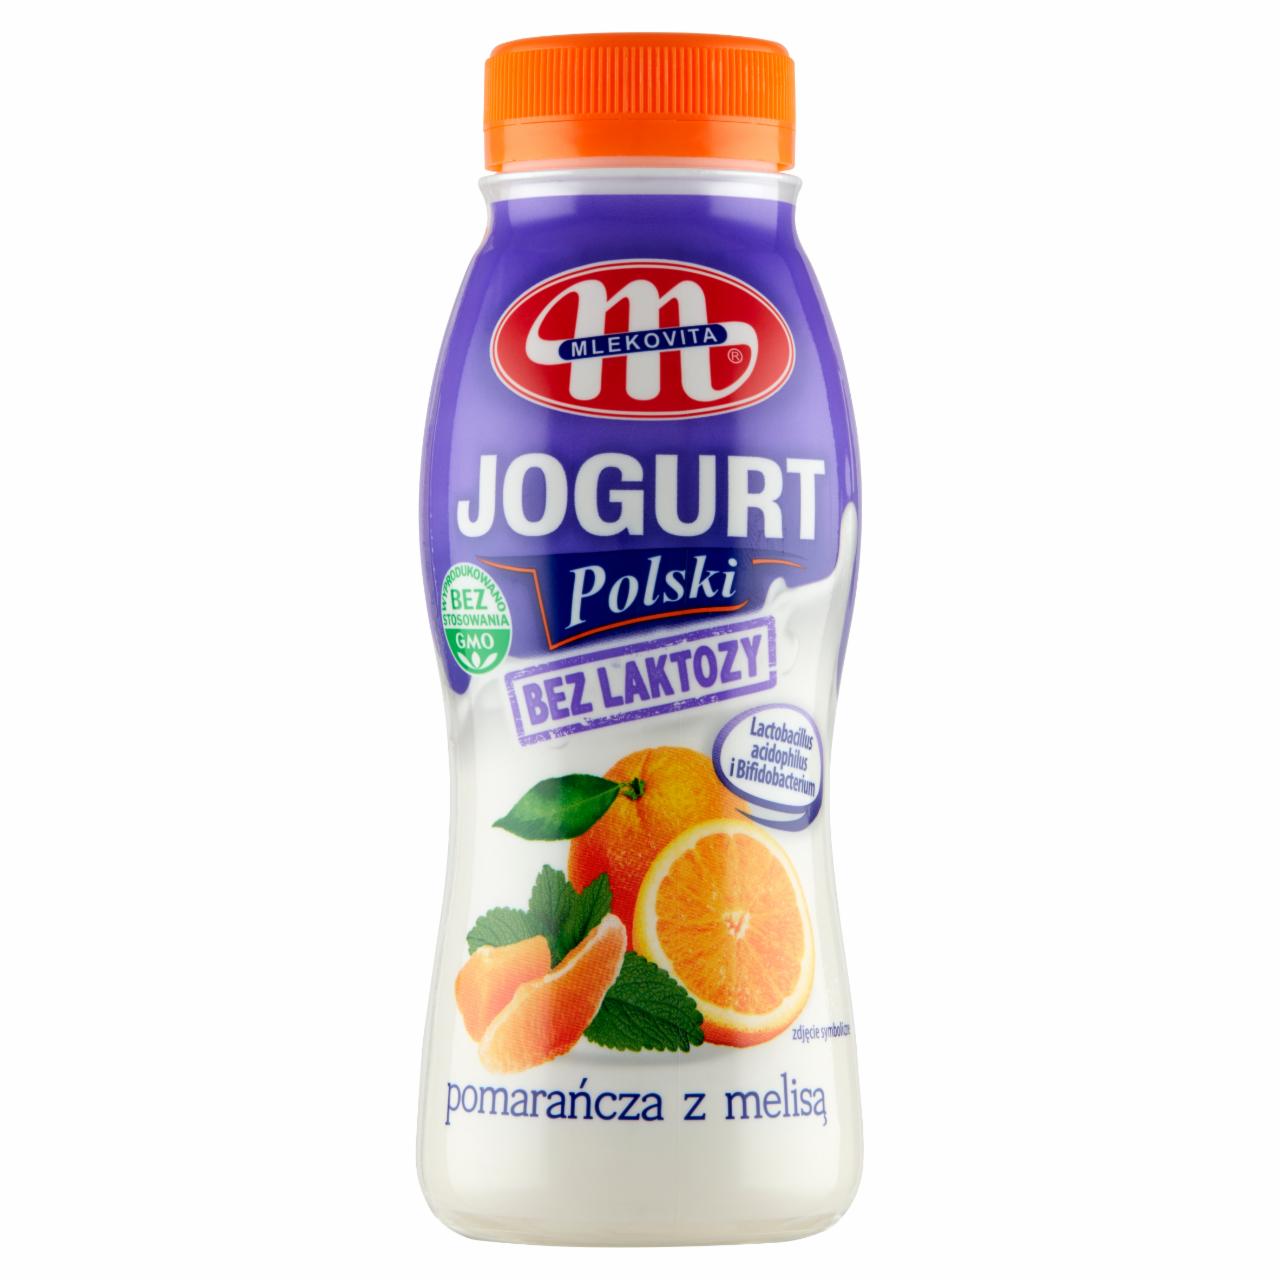 Zdjęcia - Mlekovita Jogurt Polski bez laktozy pomarańcza z melisą 250 g